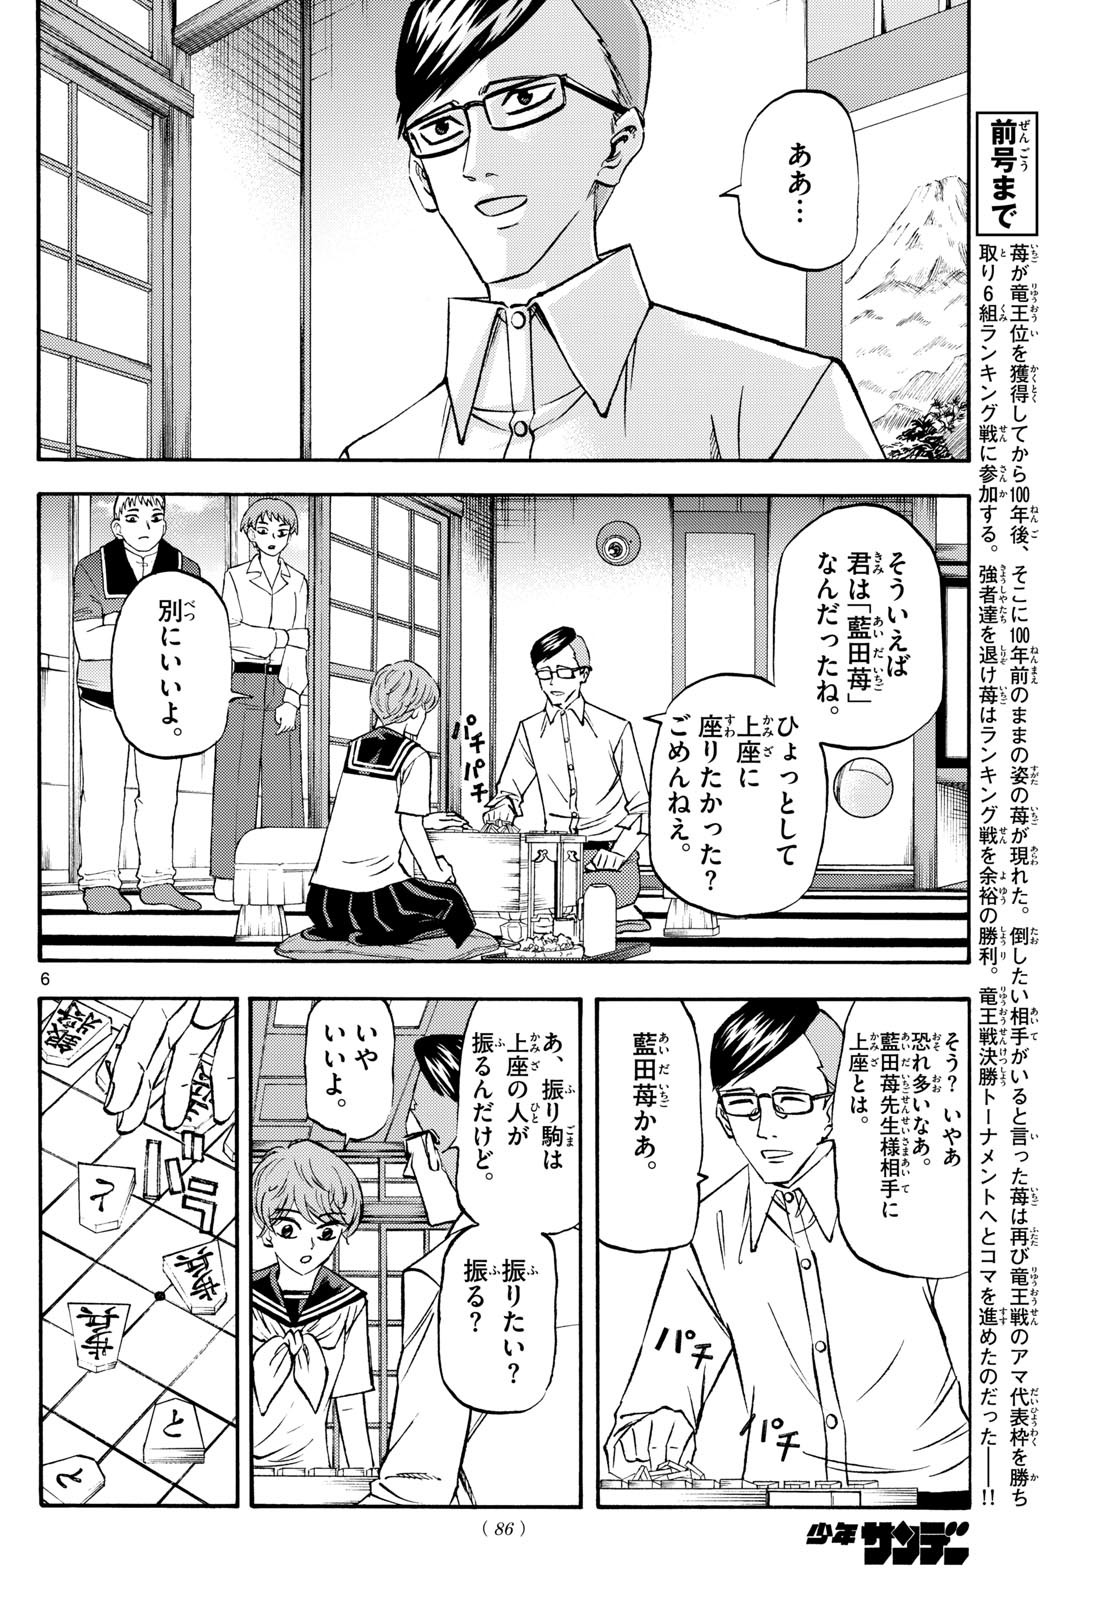 Ryu-to-Ichigo - Chapter 196 - Page 6